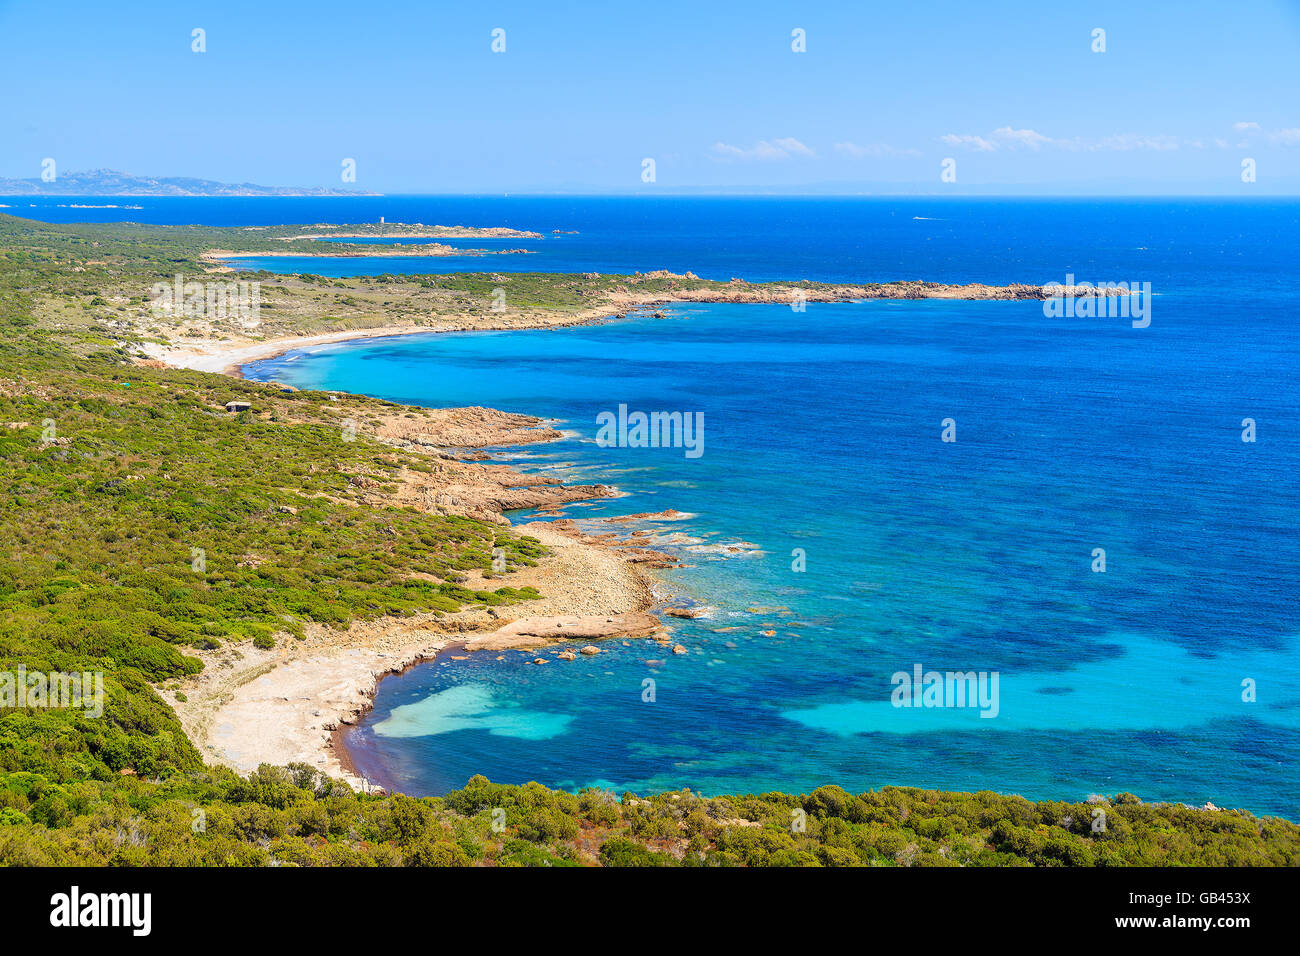 Una vista de la hermosa playa y el azul del mar en la costa de la isla de Córcega, Francia Foto de stock